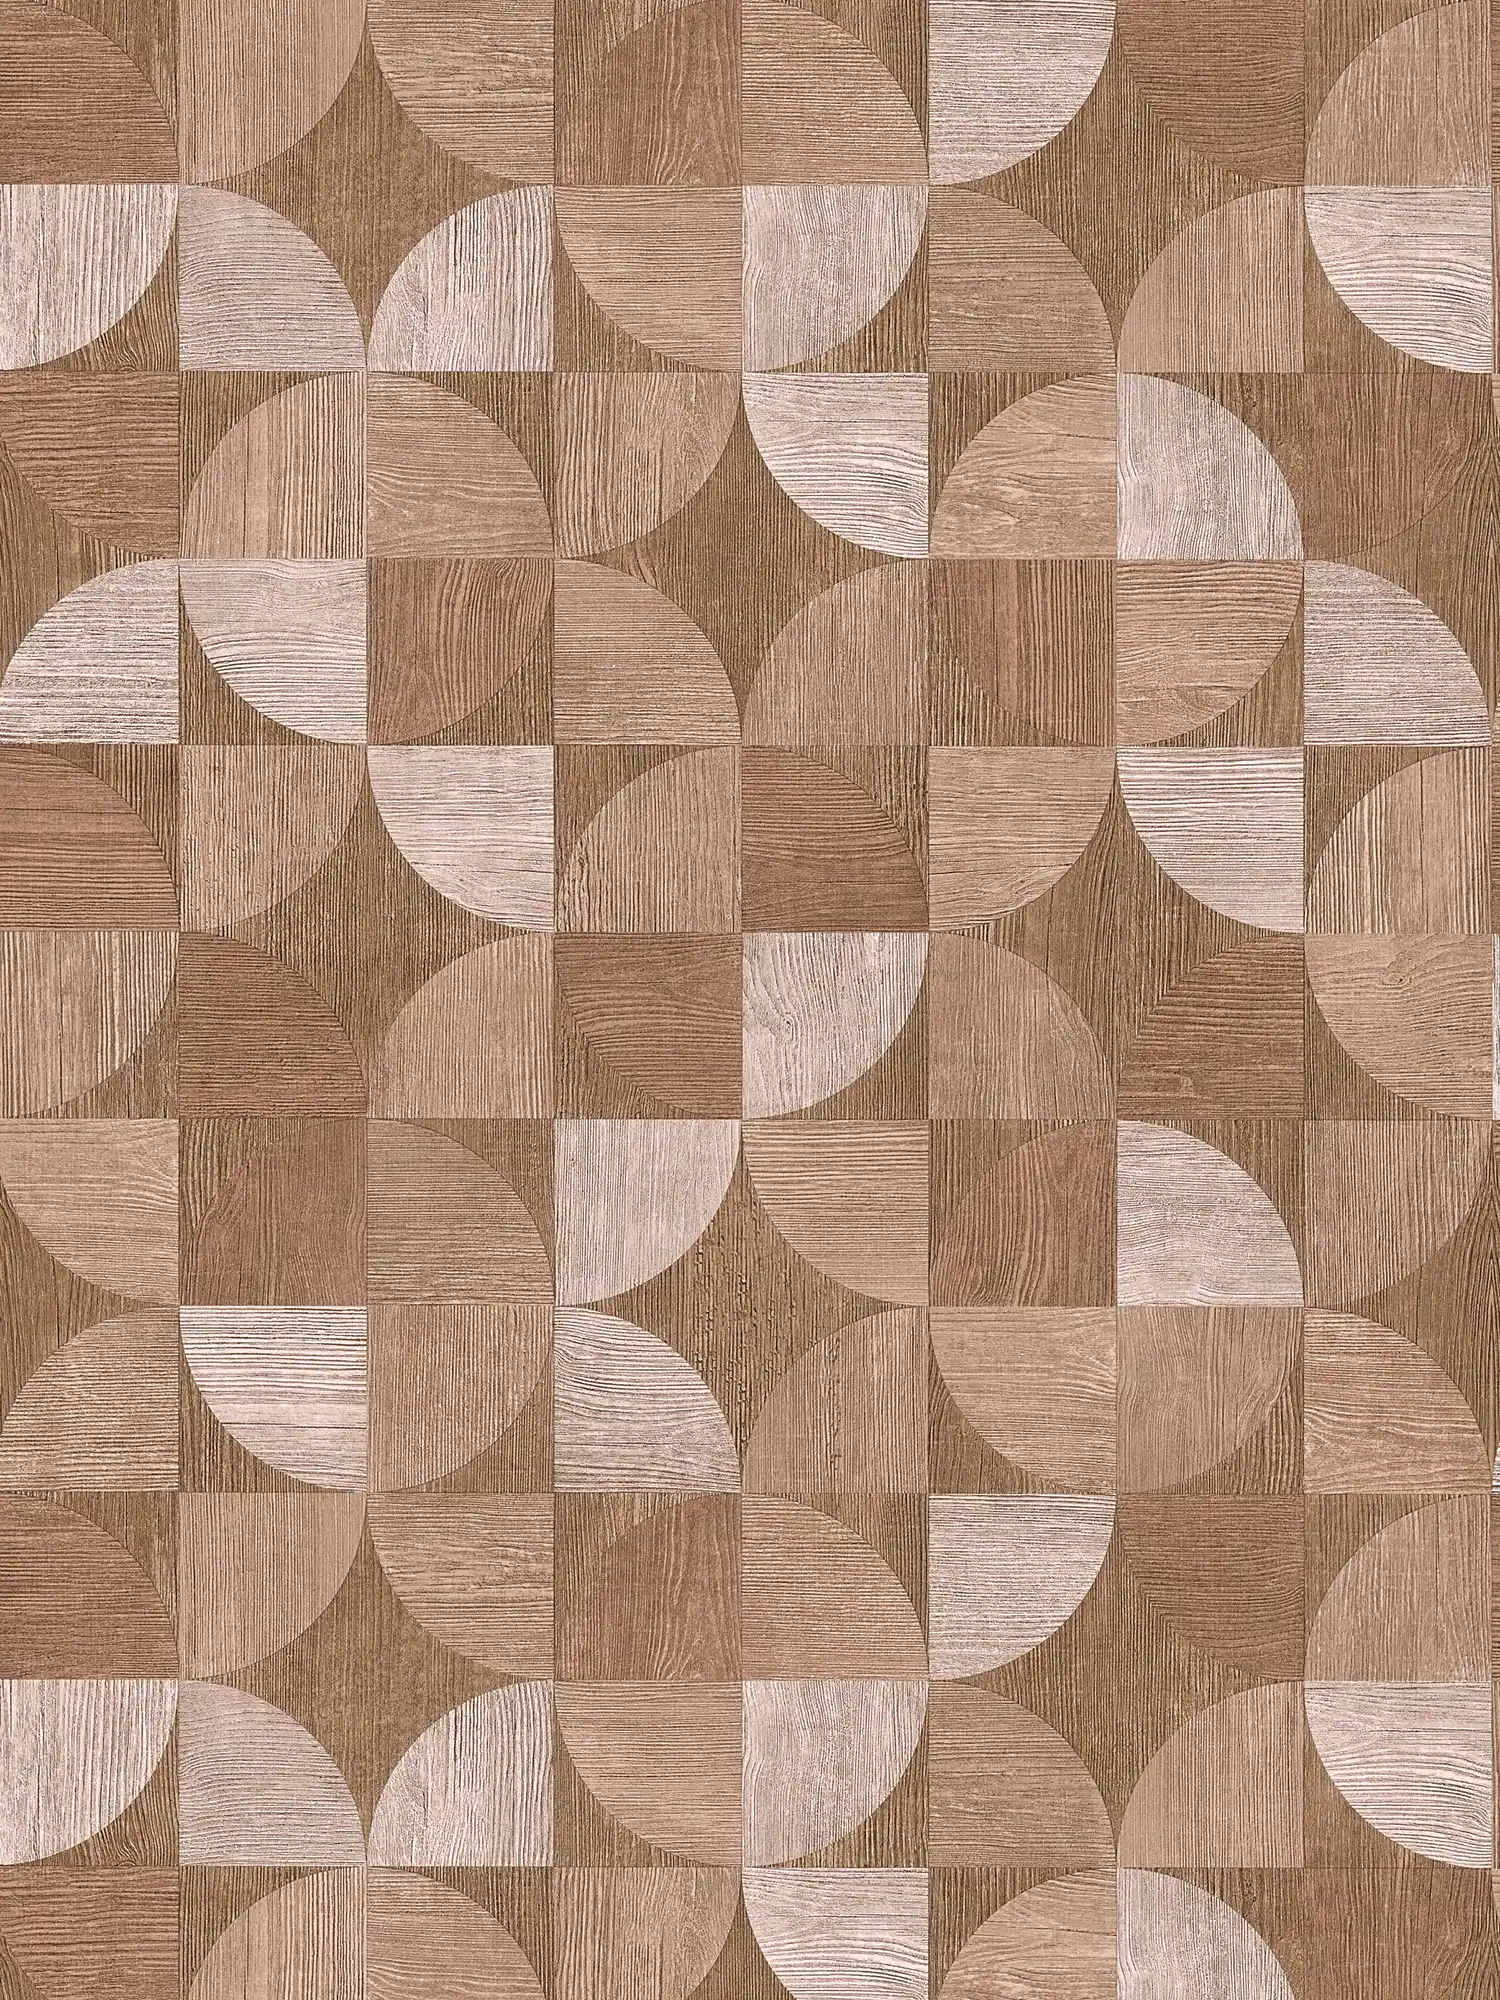 Tapete mit grafischem Muster in Holzoptik – Braun, Beige
